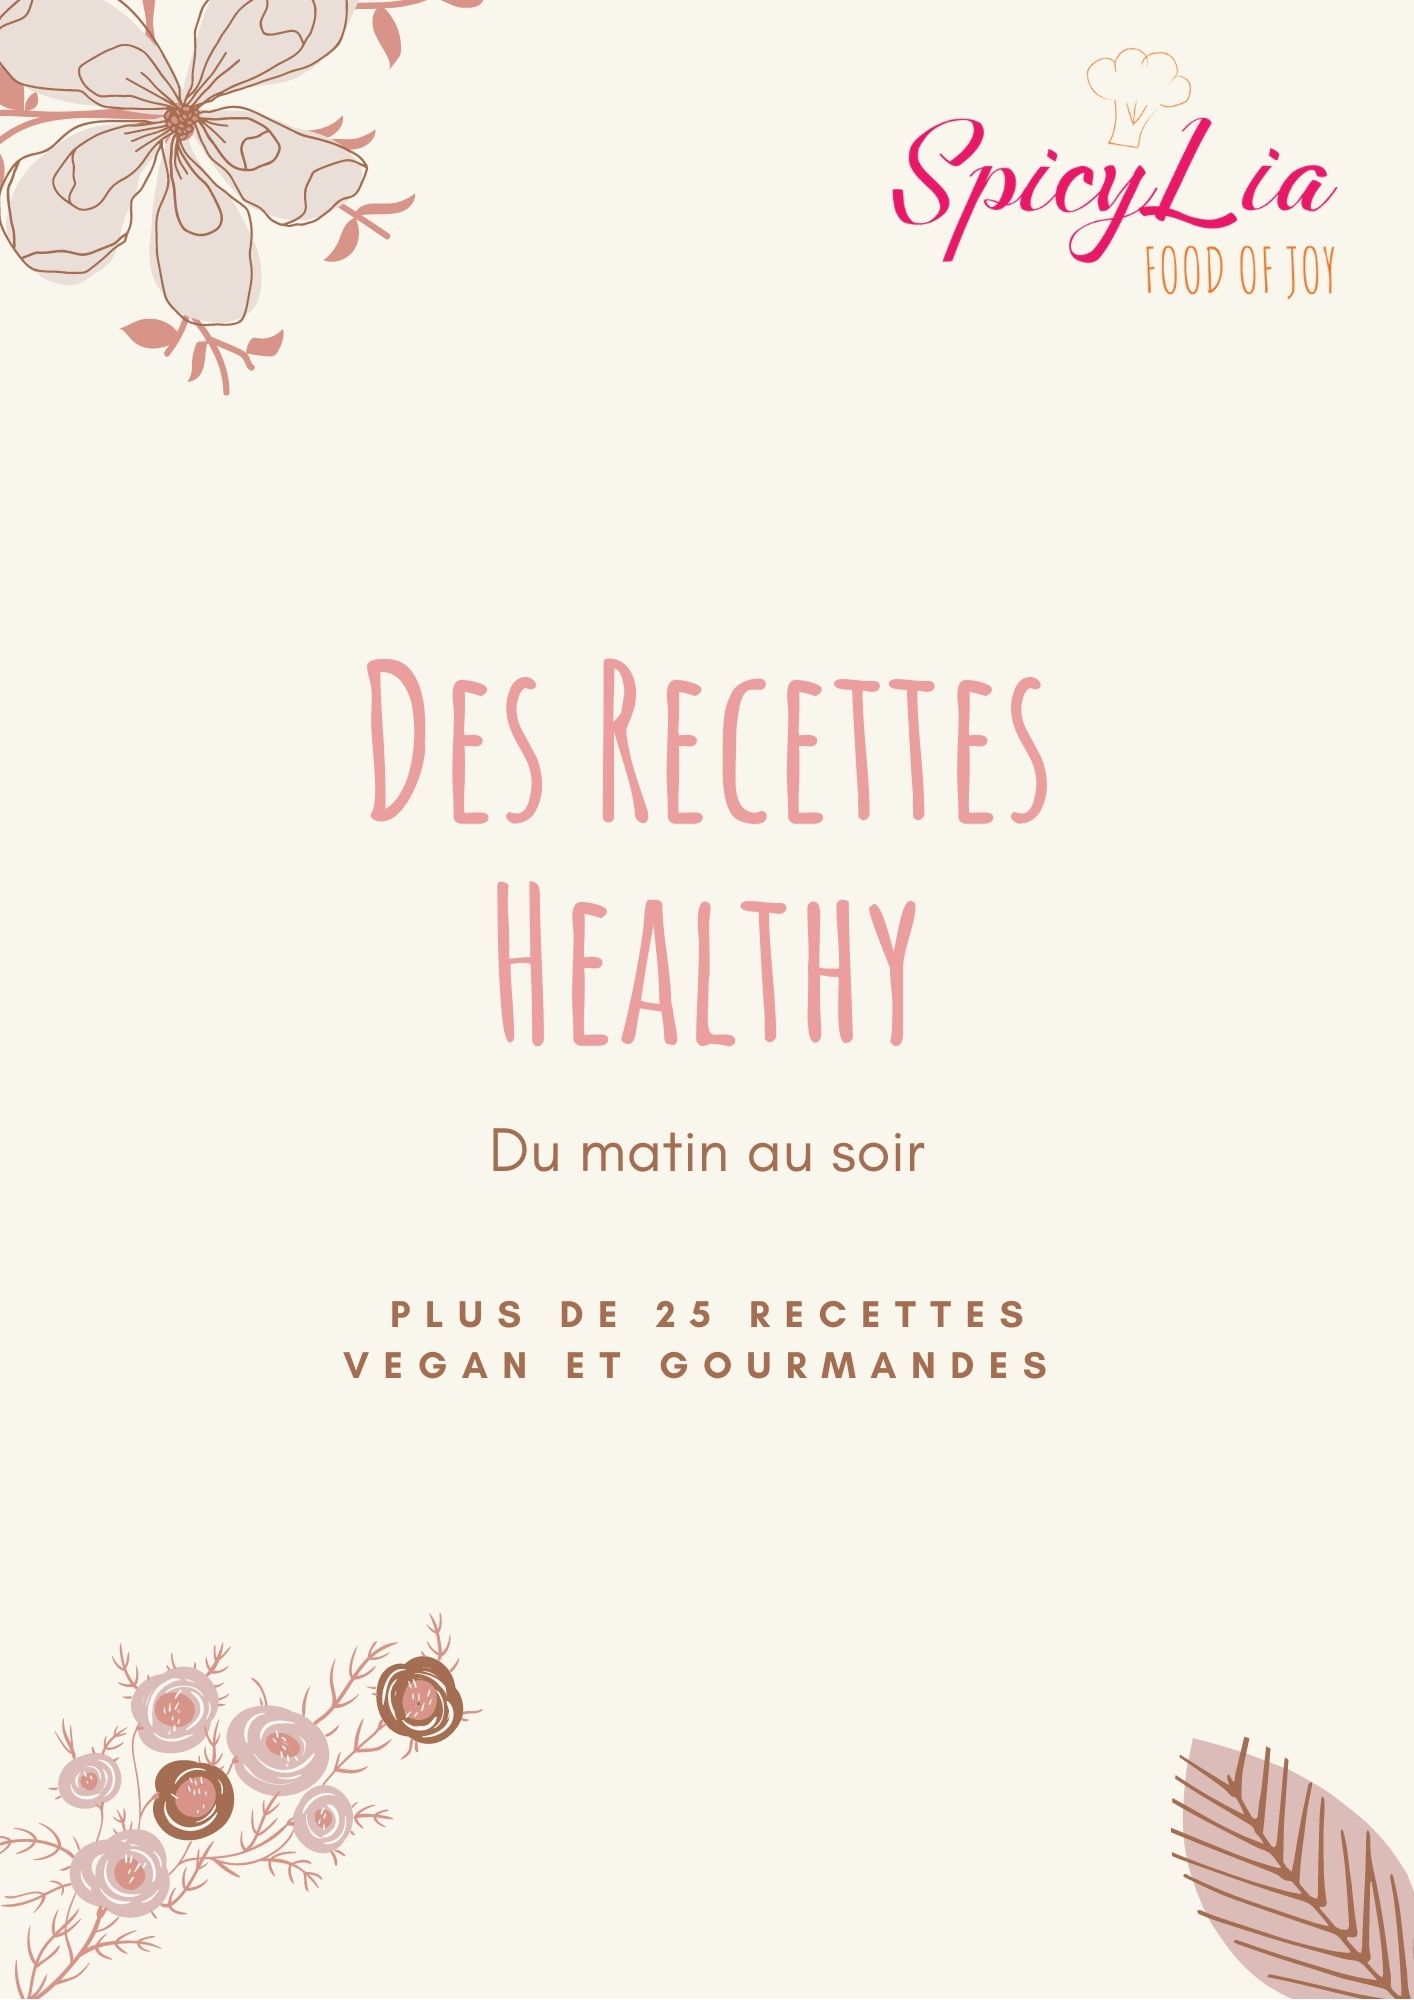 Une alimentation végétale saine et équilibrée : conseils pratiques - AVF  (Association Végétarienne de France)